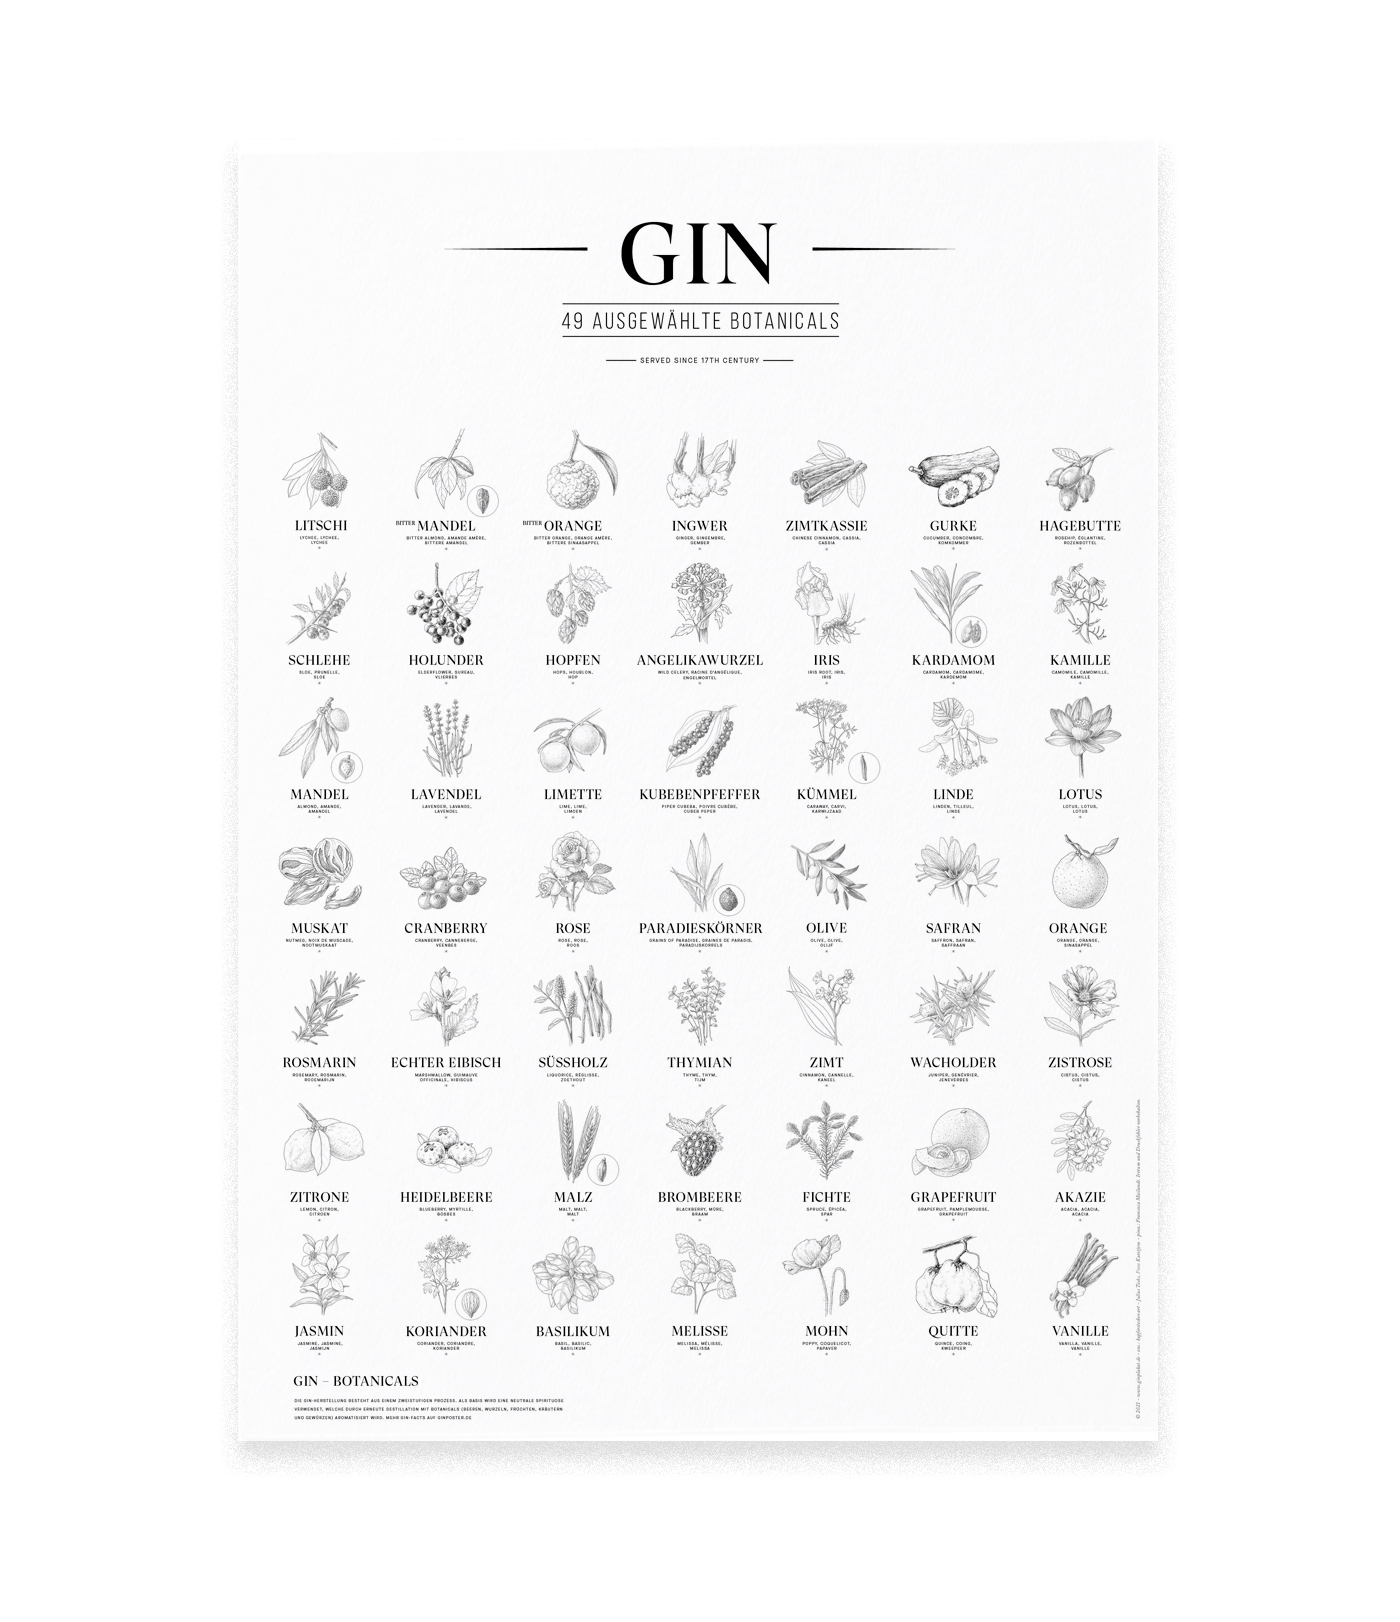 Gin Plakat, 49 ausgewählte Botanicals, Schwarz-Weiß, Format: A2